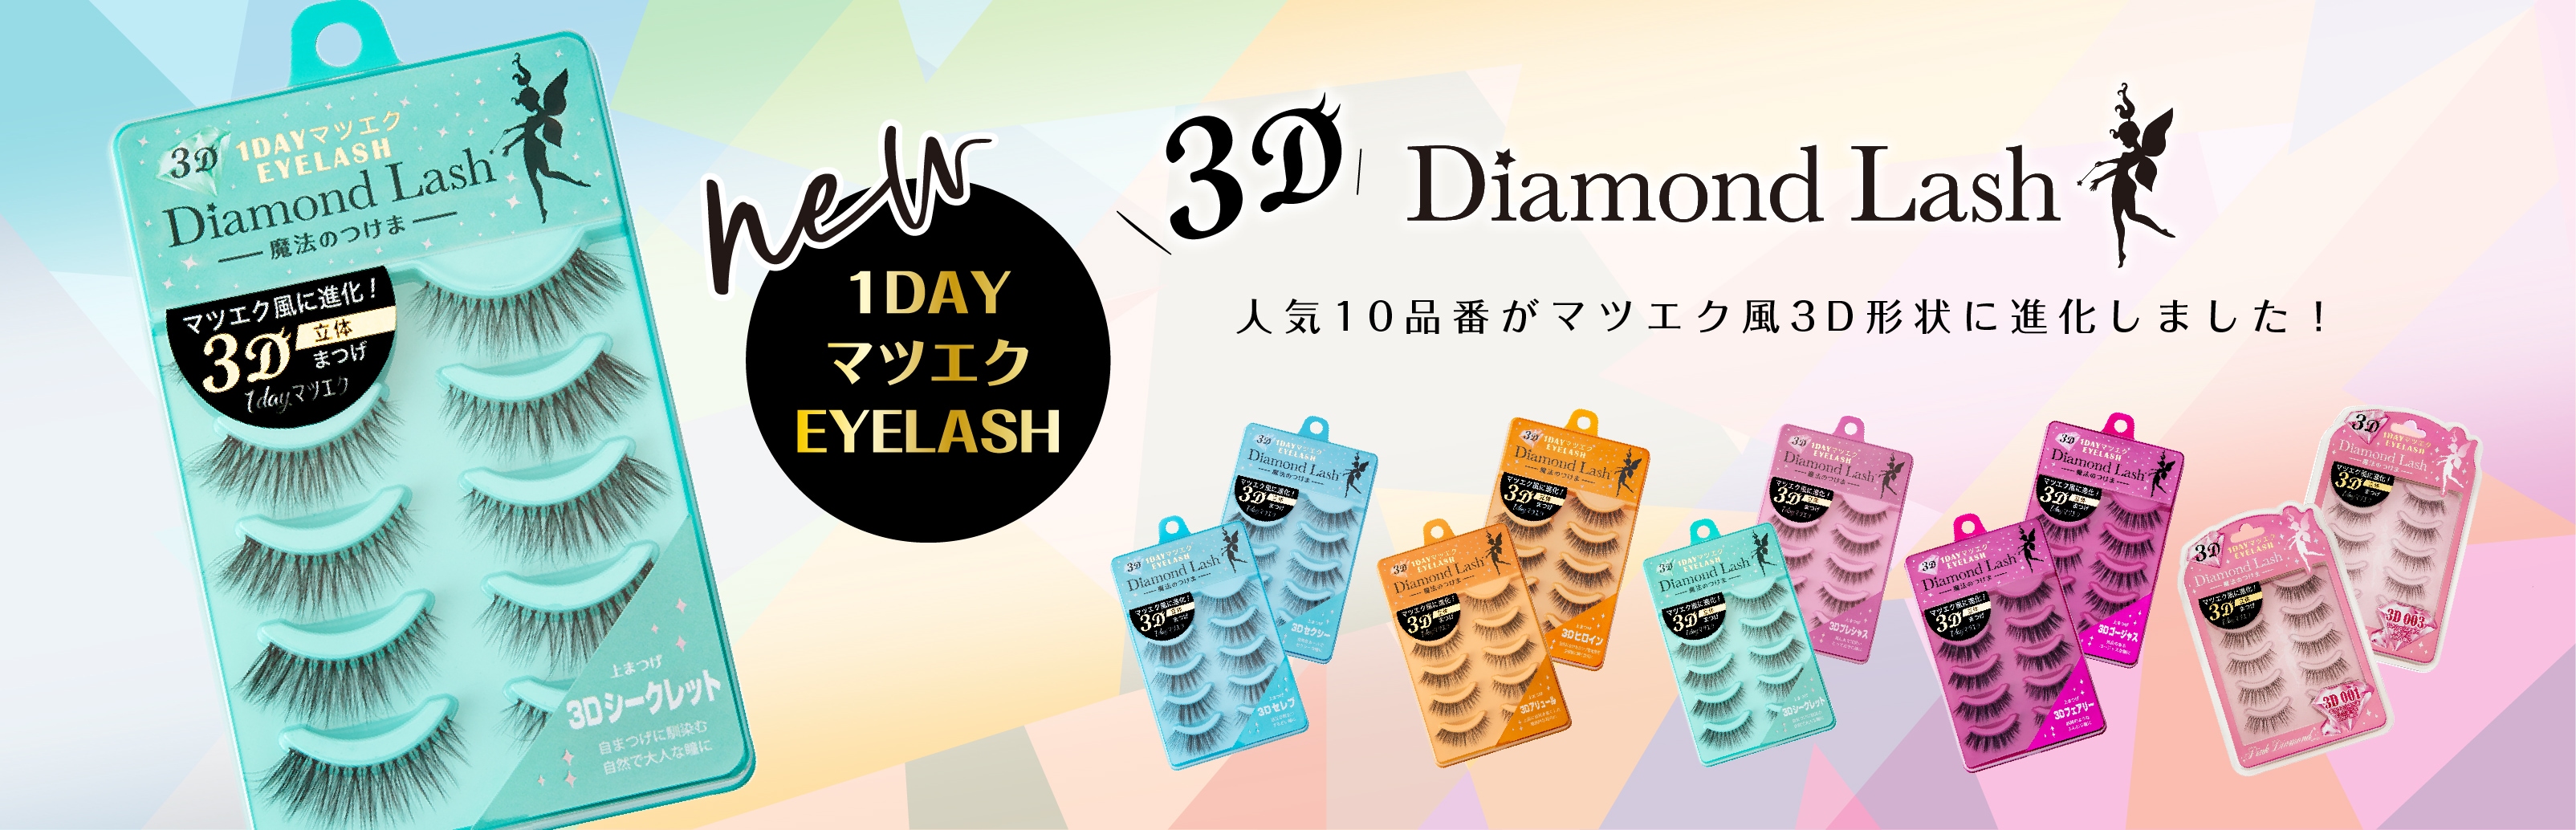 DiamondLash2ペア